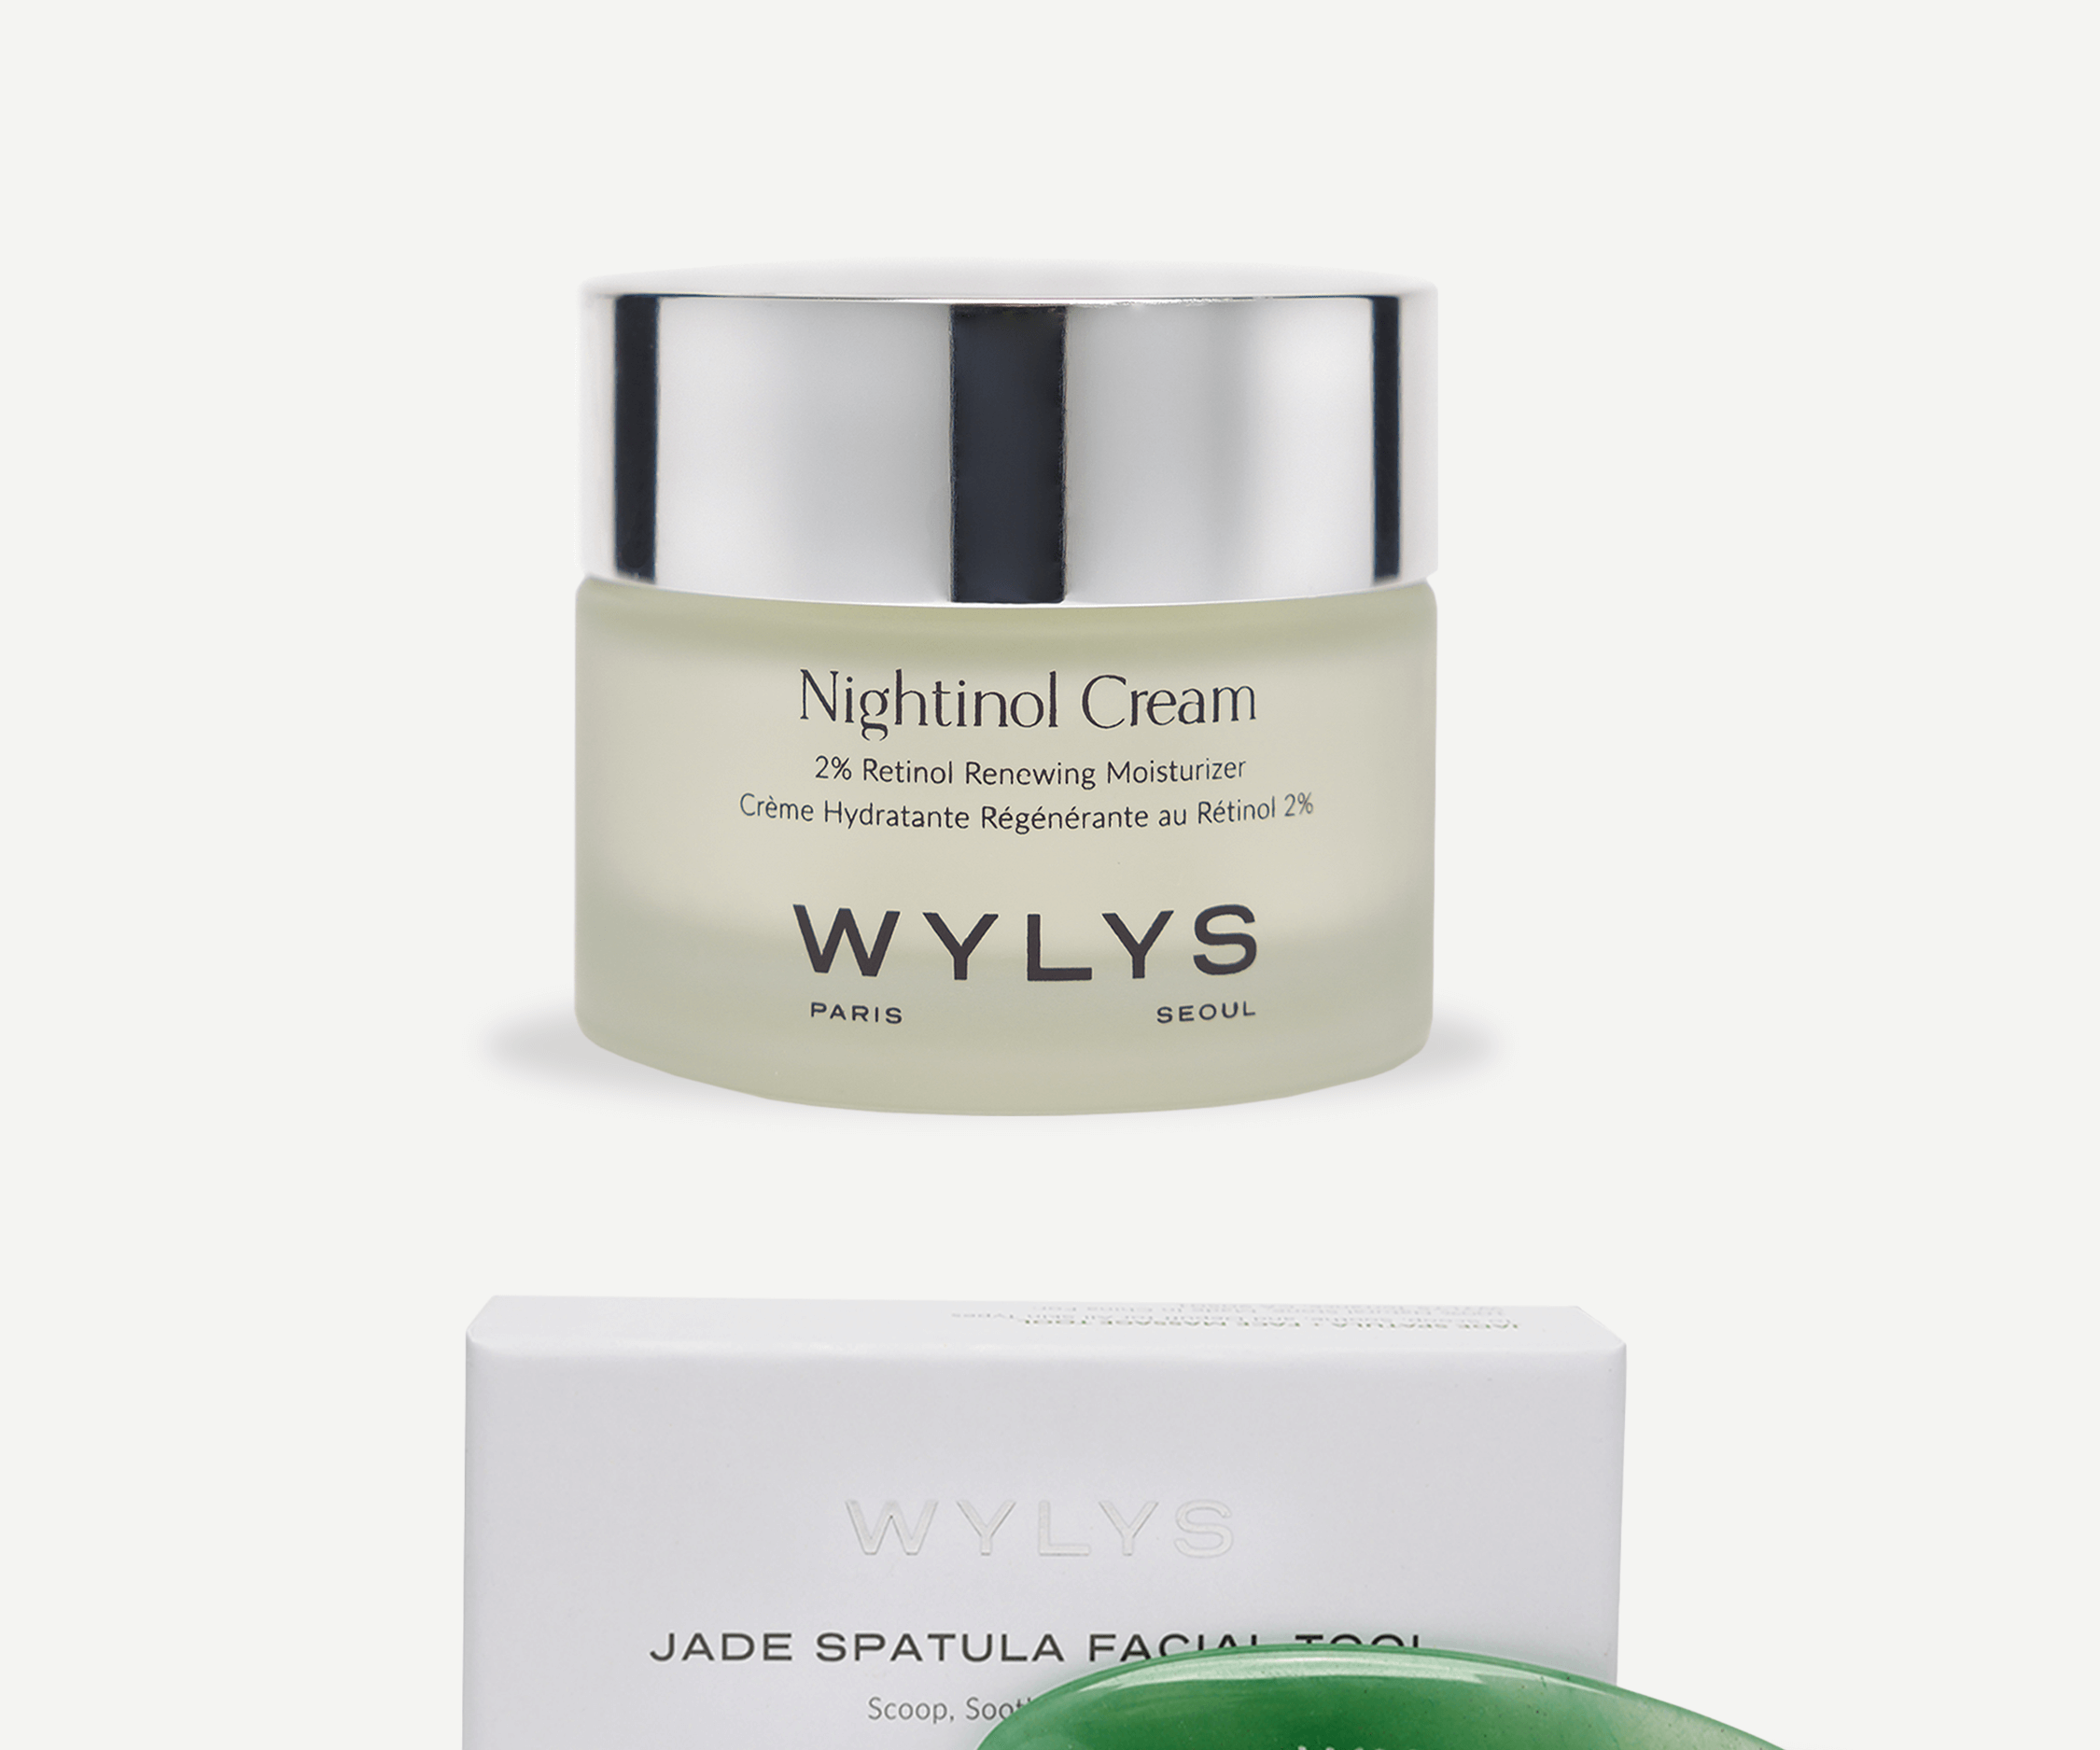 WYLYS Nightinol Cream with Jade Spatula Facial Tool